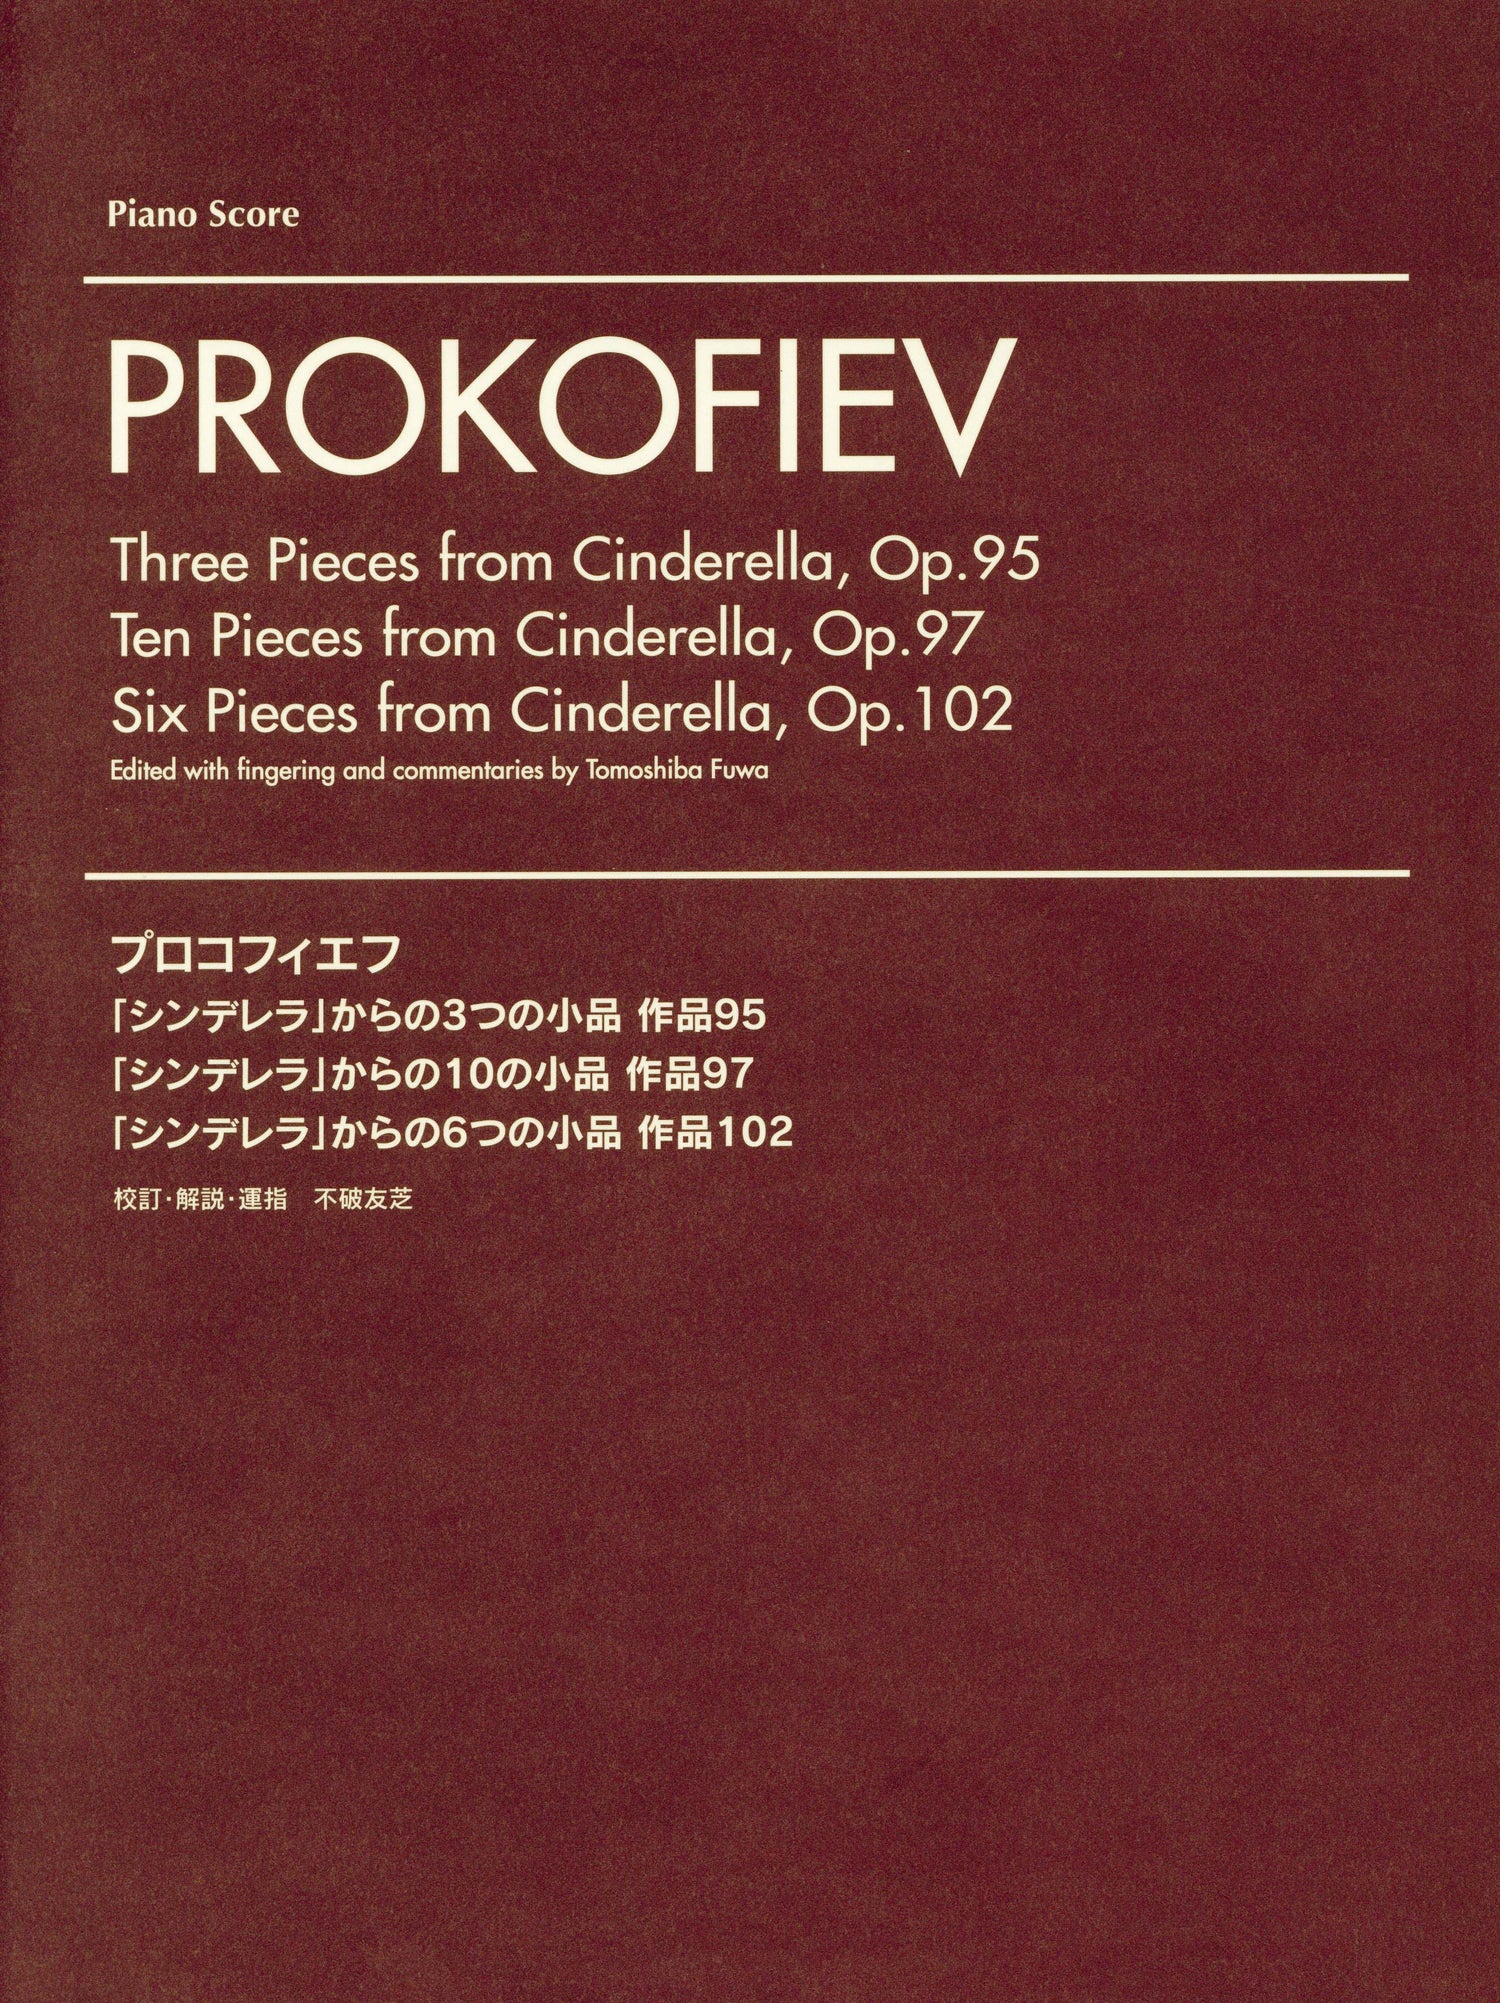 プロコフィエフ 「シンデレラ」からのピアノの小品